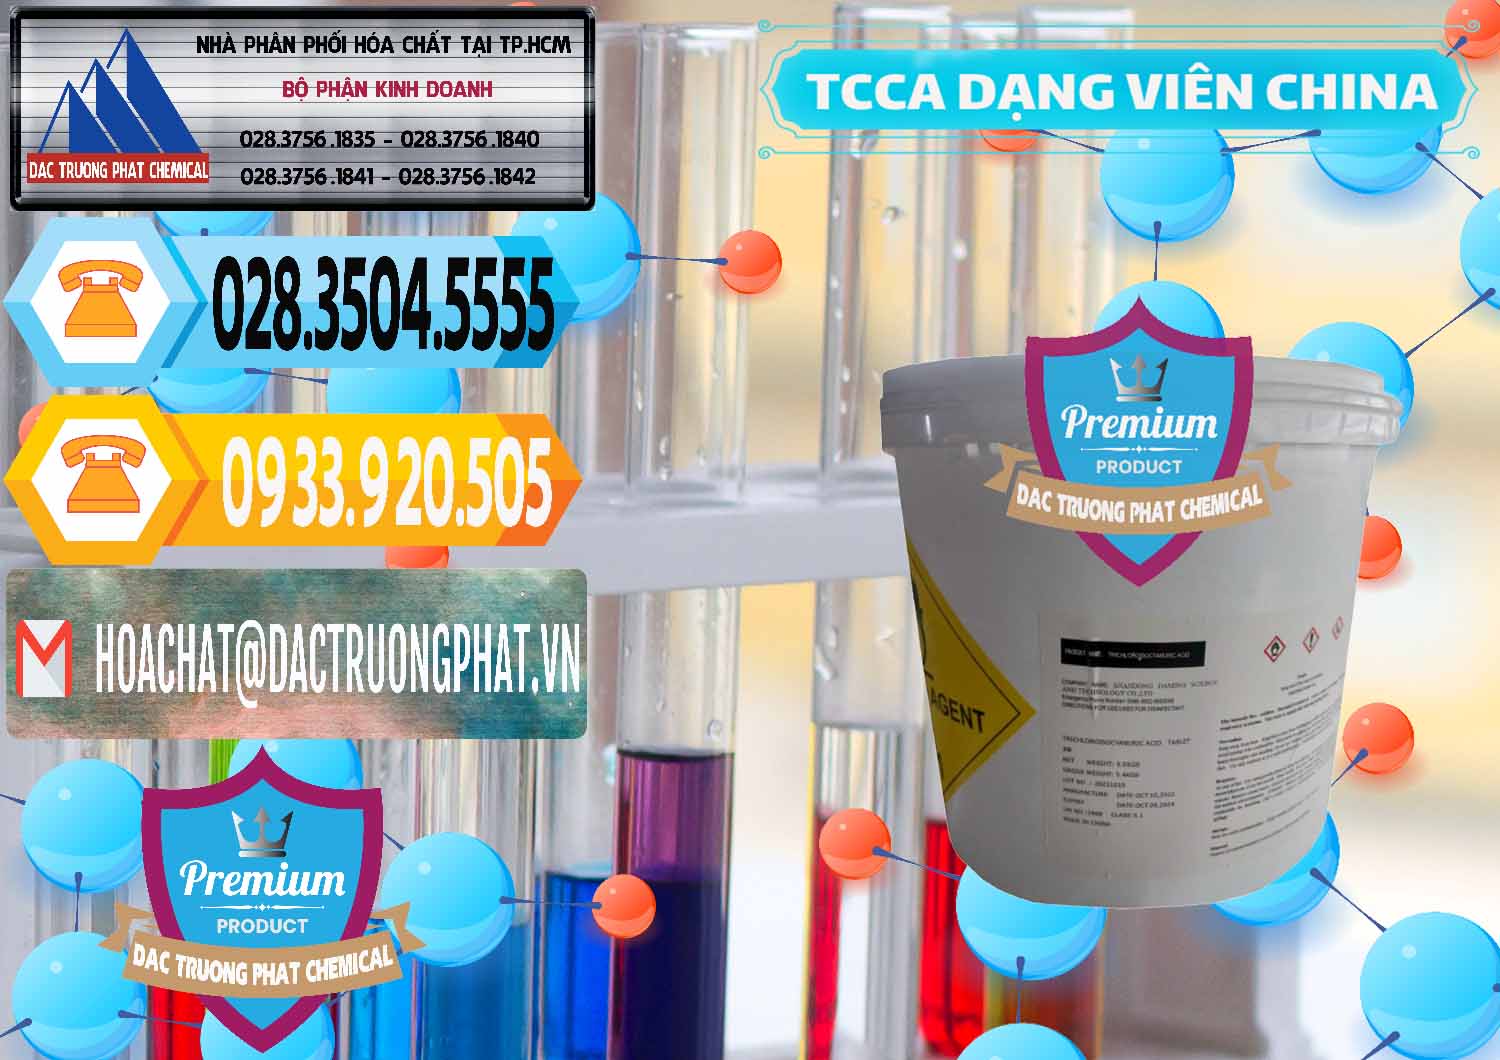 Cty bán ( phân phối ) TCCA - Acid Trichloroisocyanuric Dạng Viên Thùng 5kg Trung Quốc China - 0379 - Nhà phân phối & cung cấp hóa chất tại TP.HCM - hoachattayrua.net